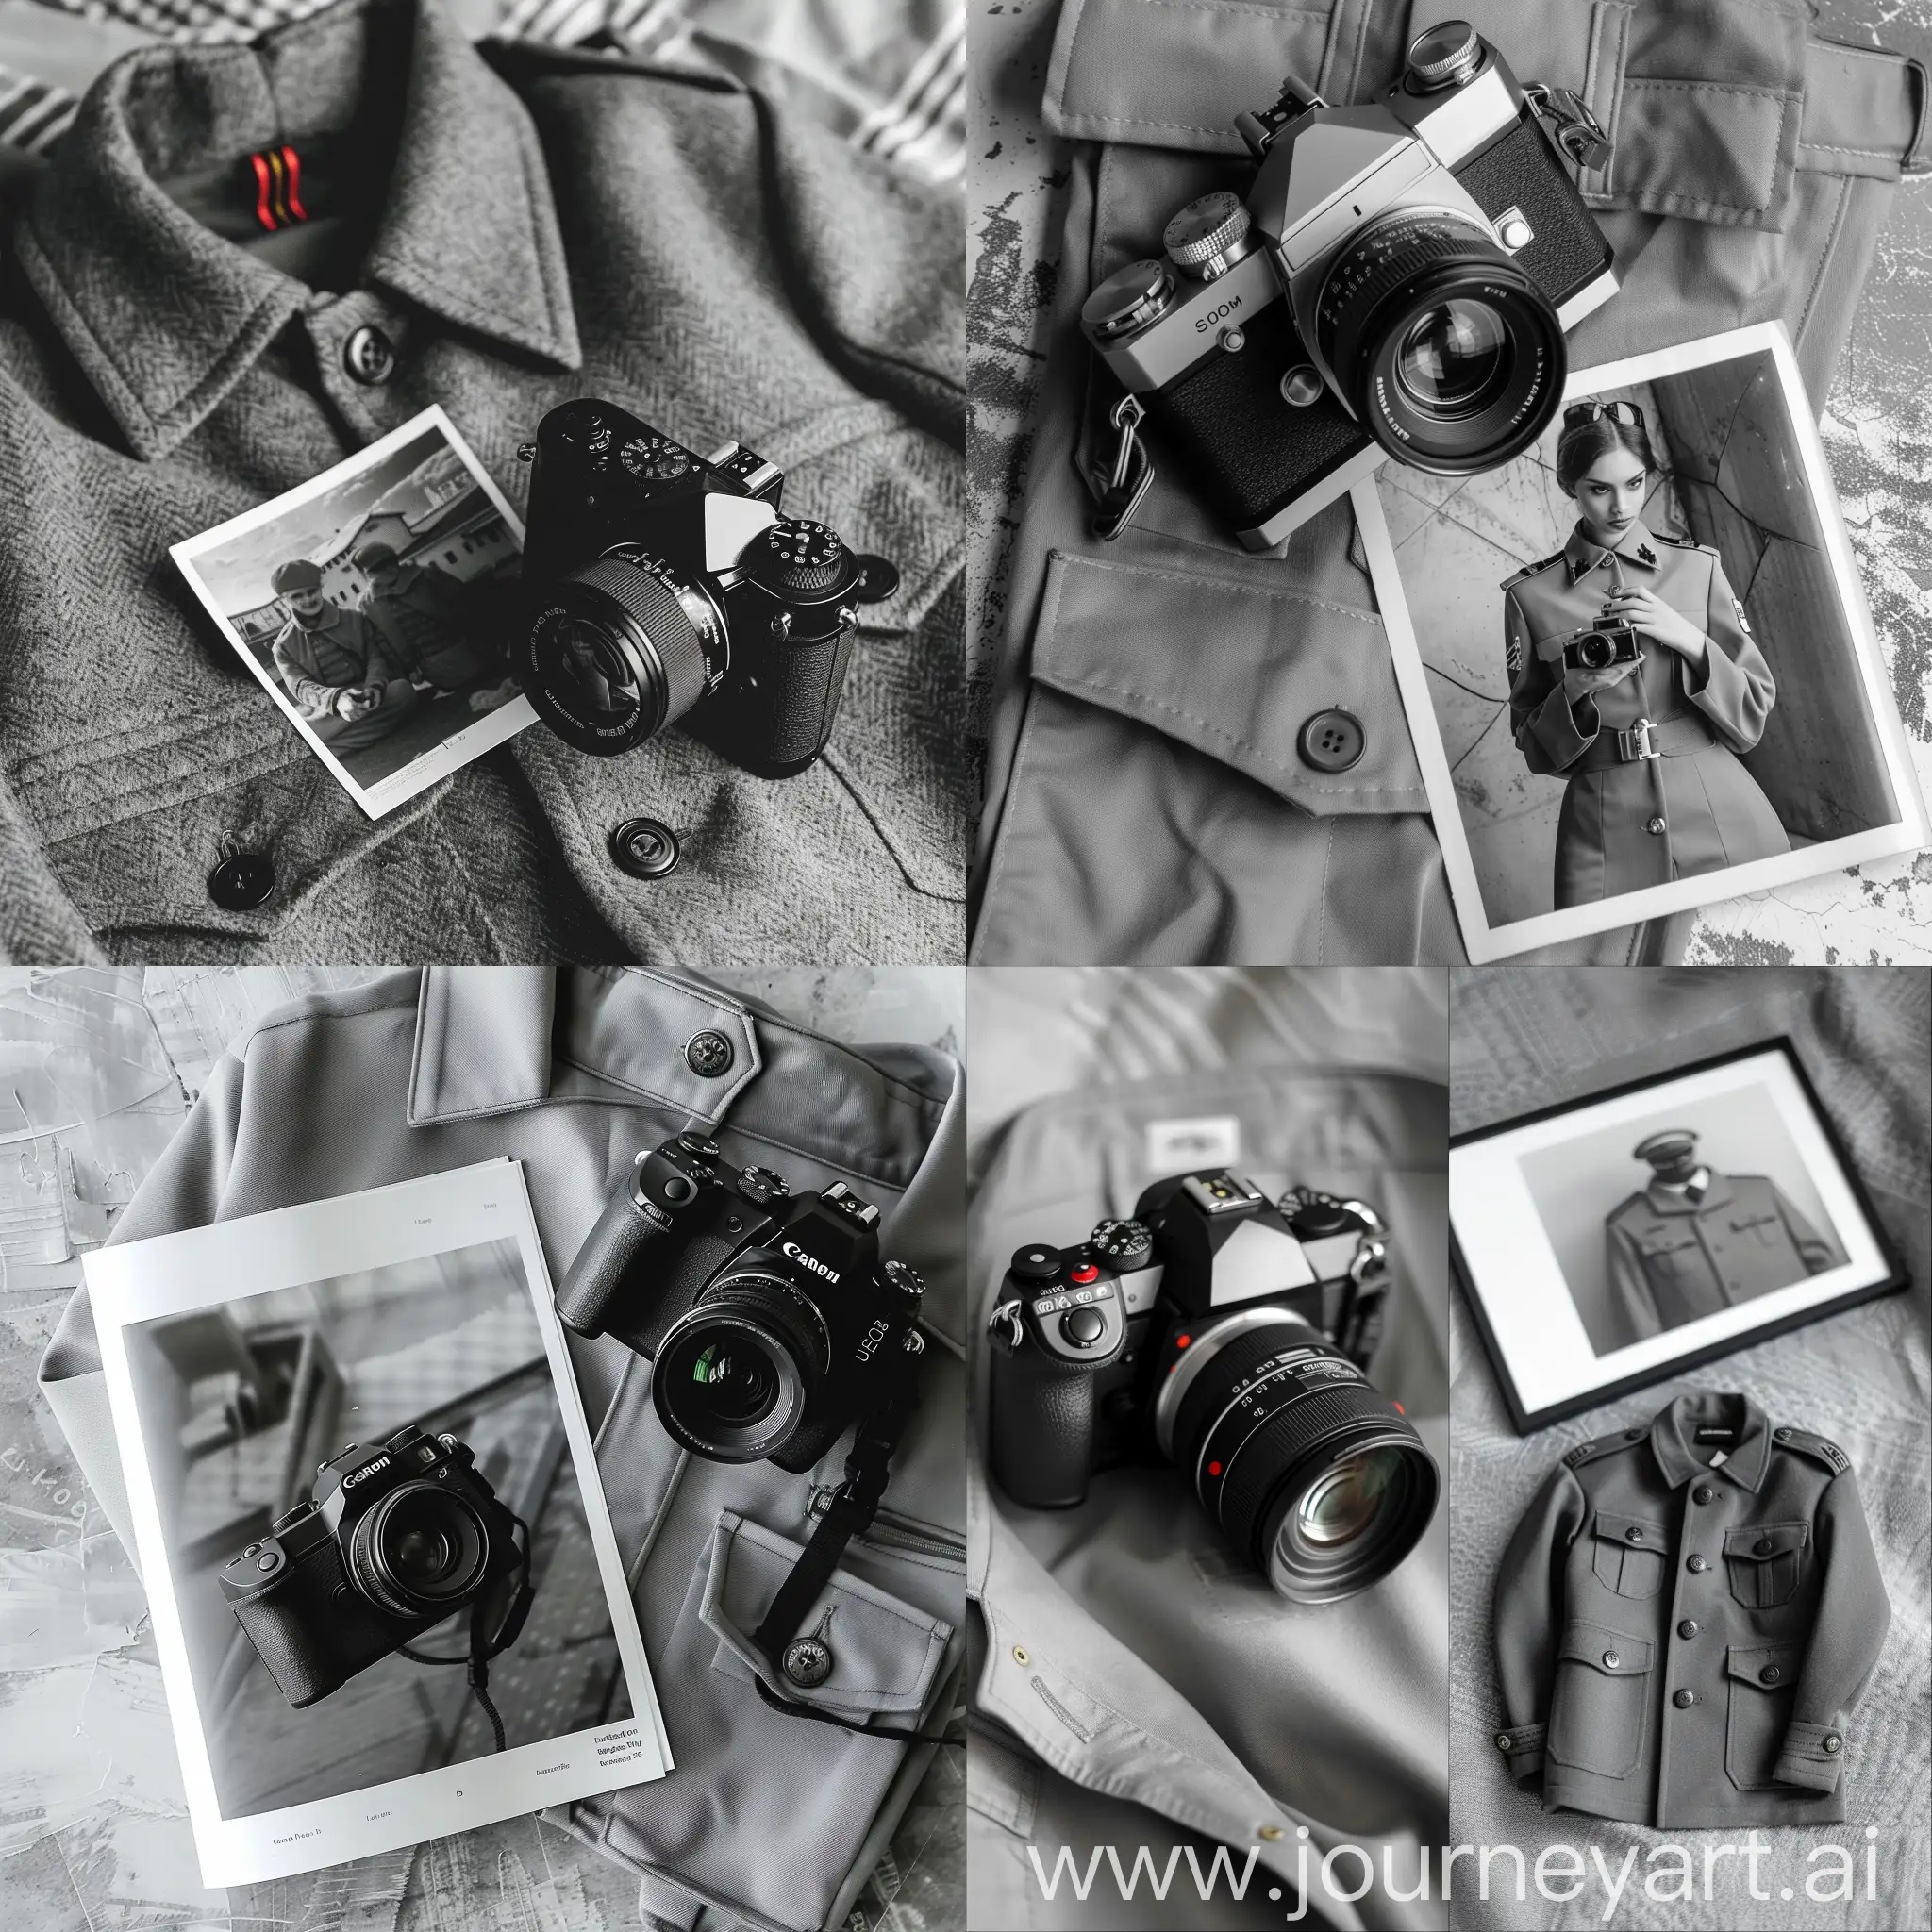 digital camera and photo, stylish black and white magazine photo, gray uniform background